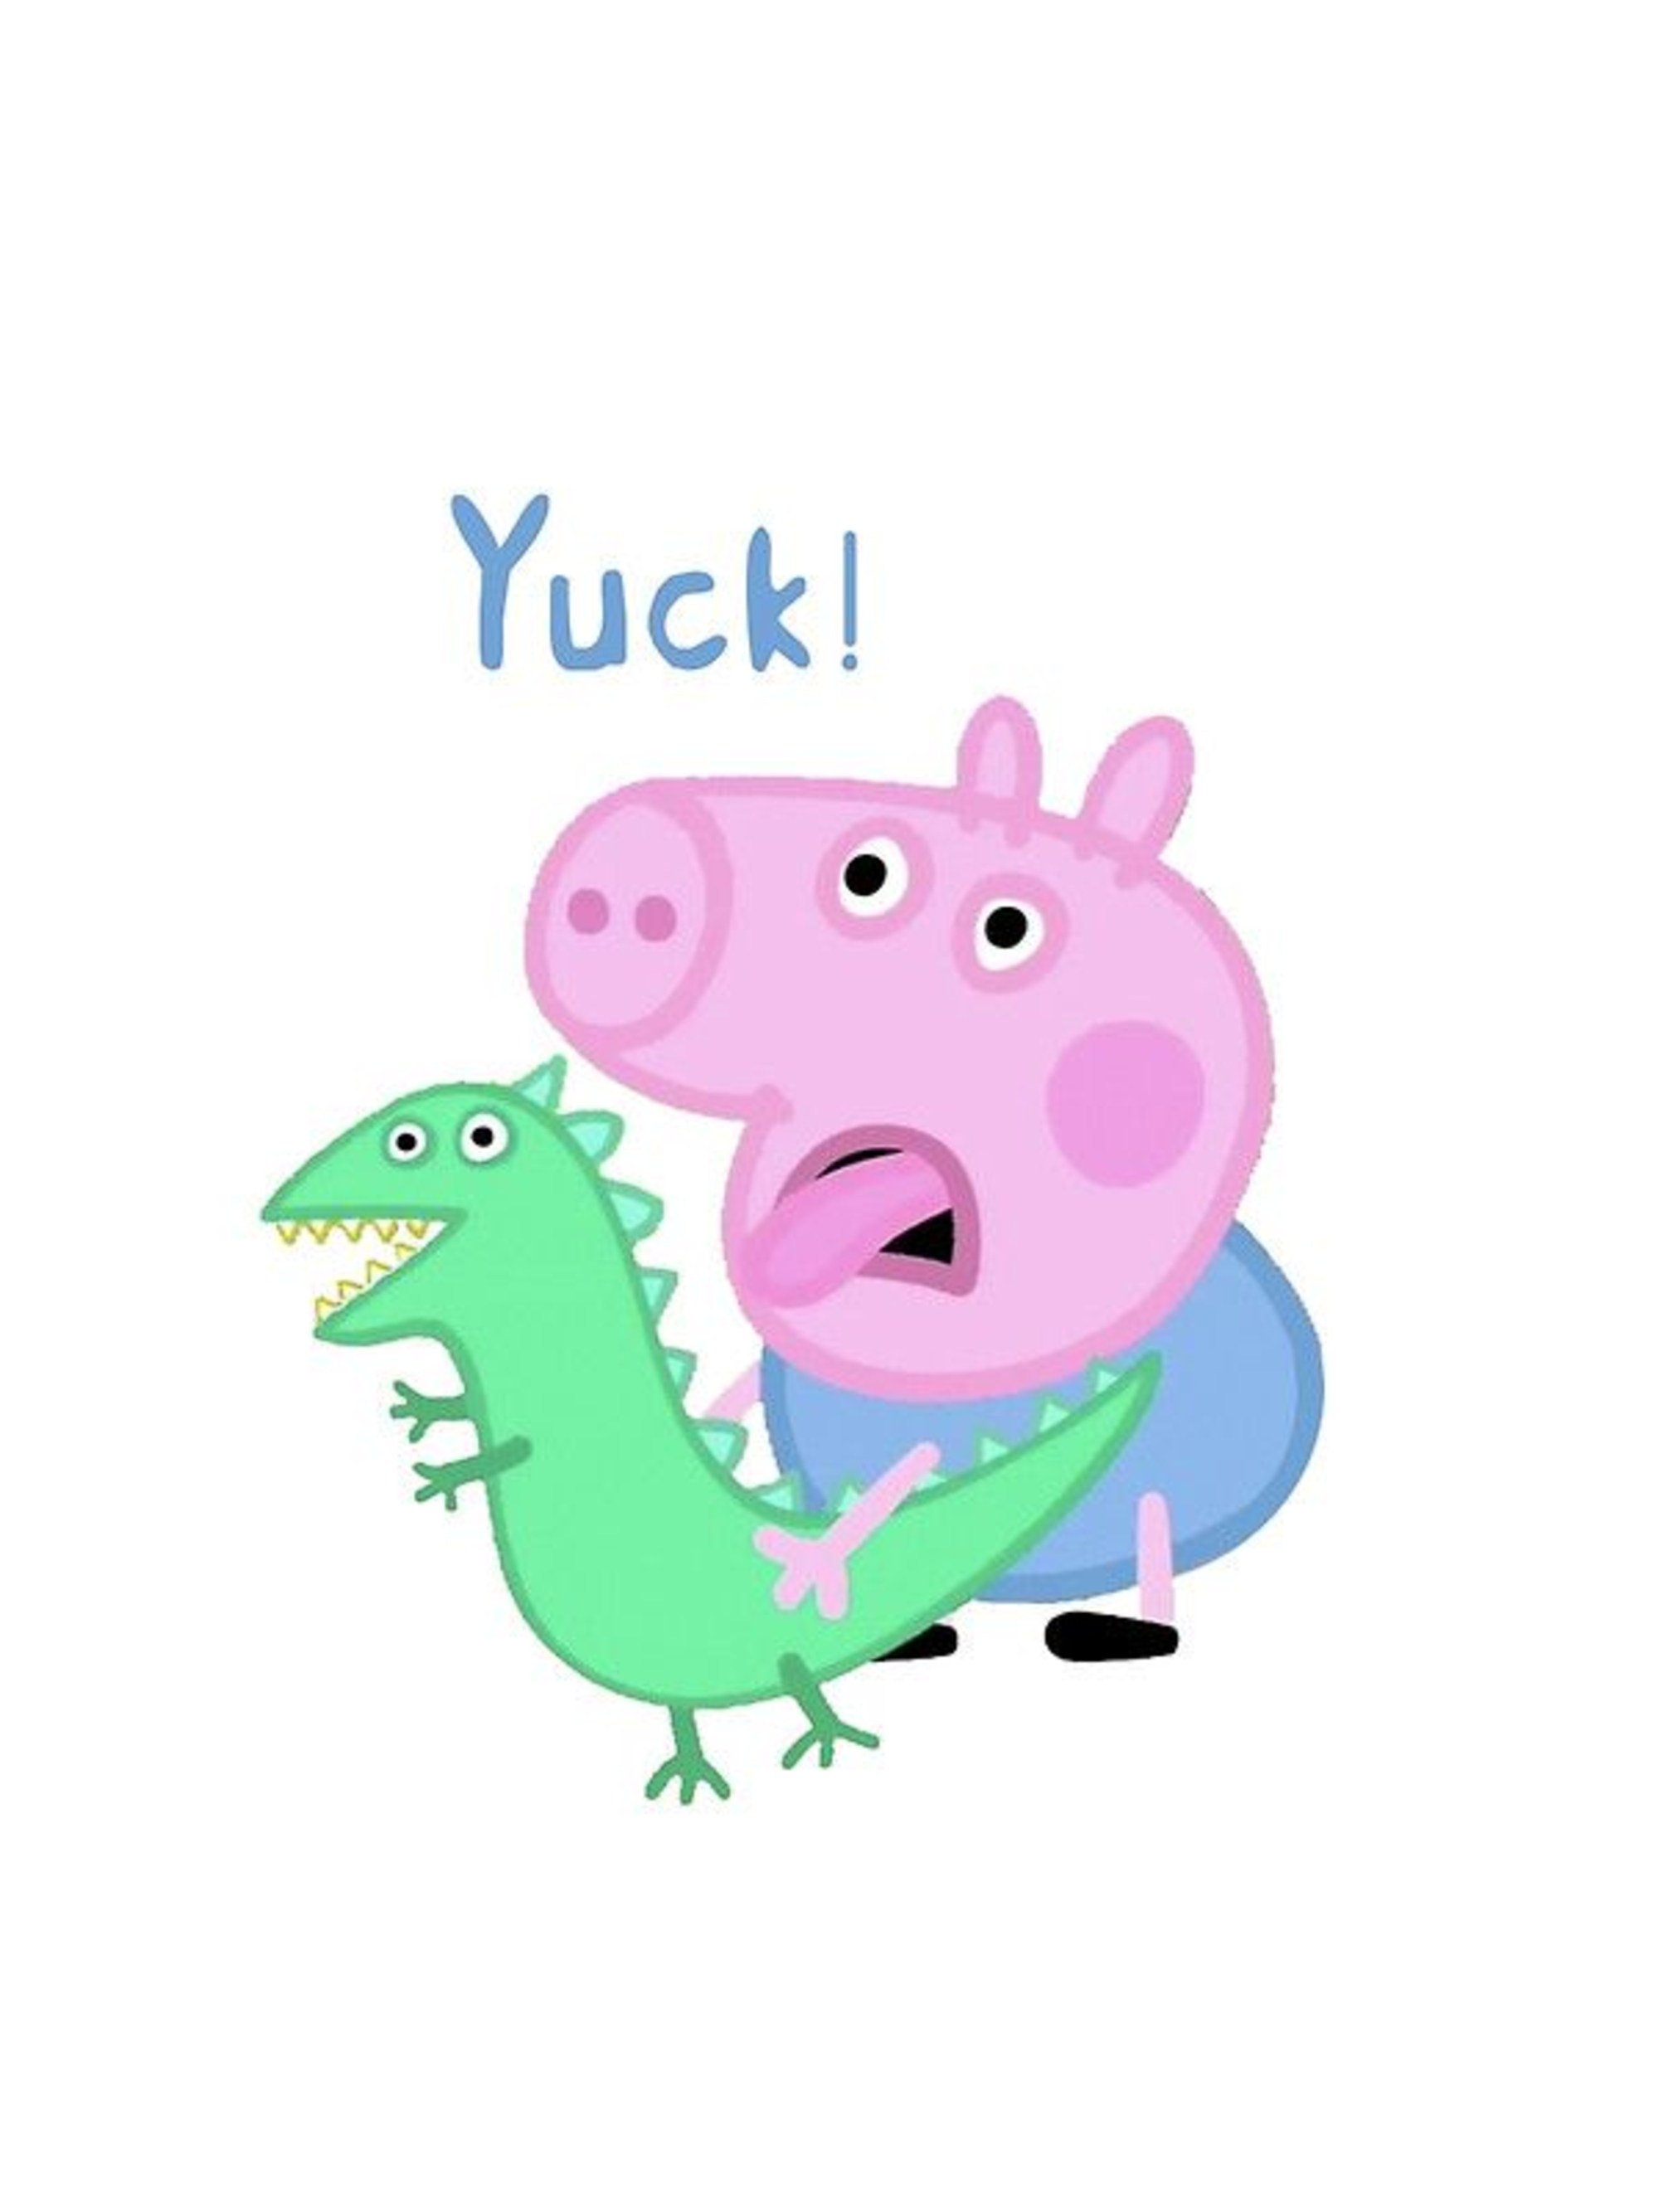 Dinosaur George Peppa Pig - Peppa Pig George Yuck , HD Wallpaper & Backgrounds